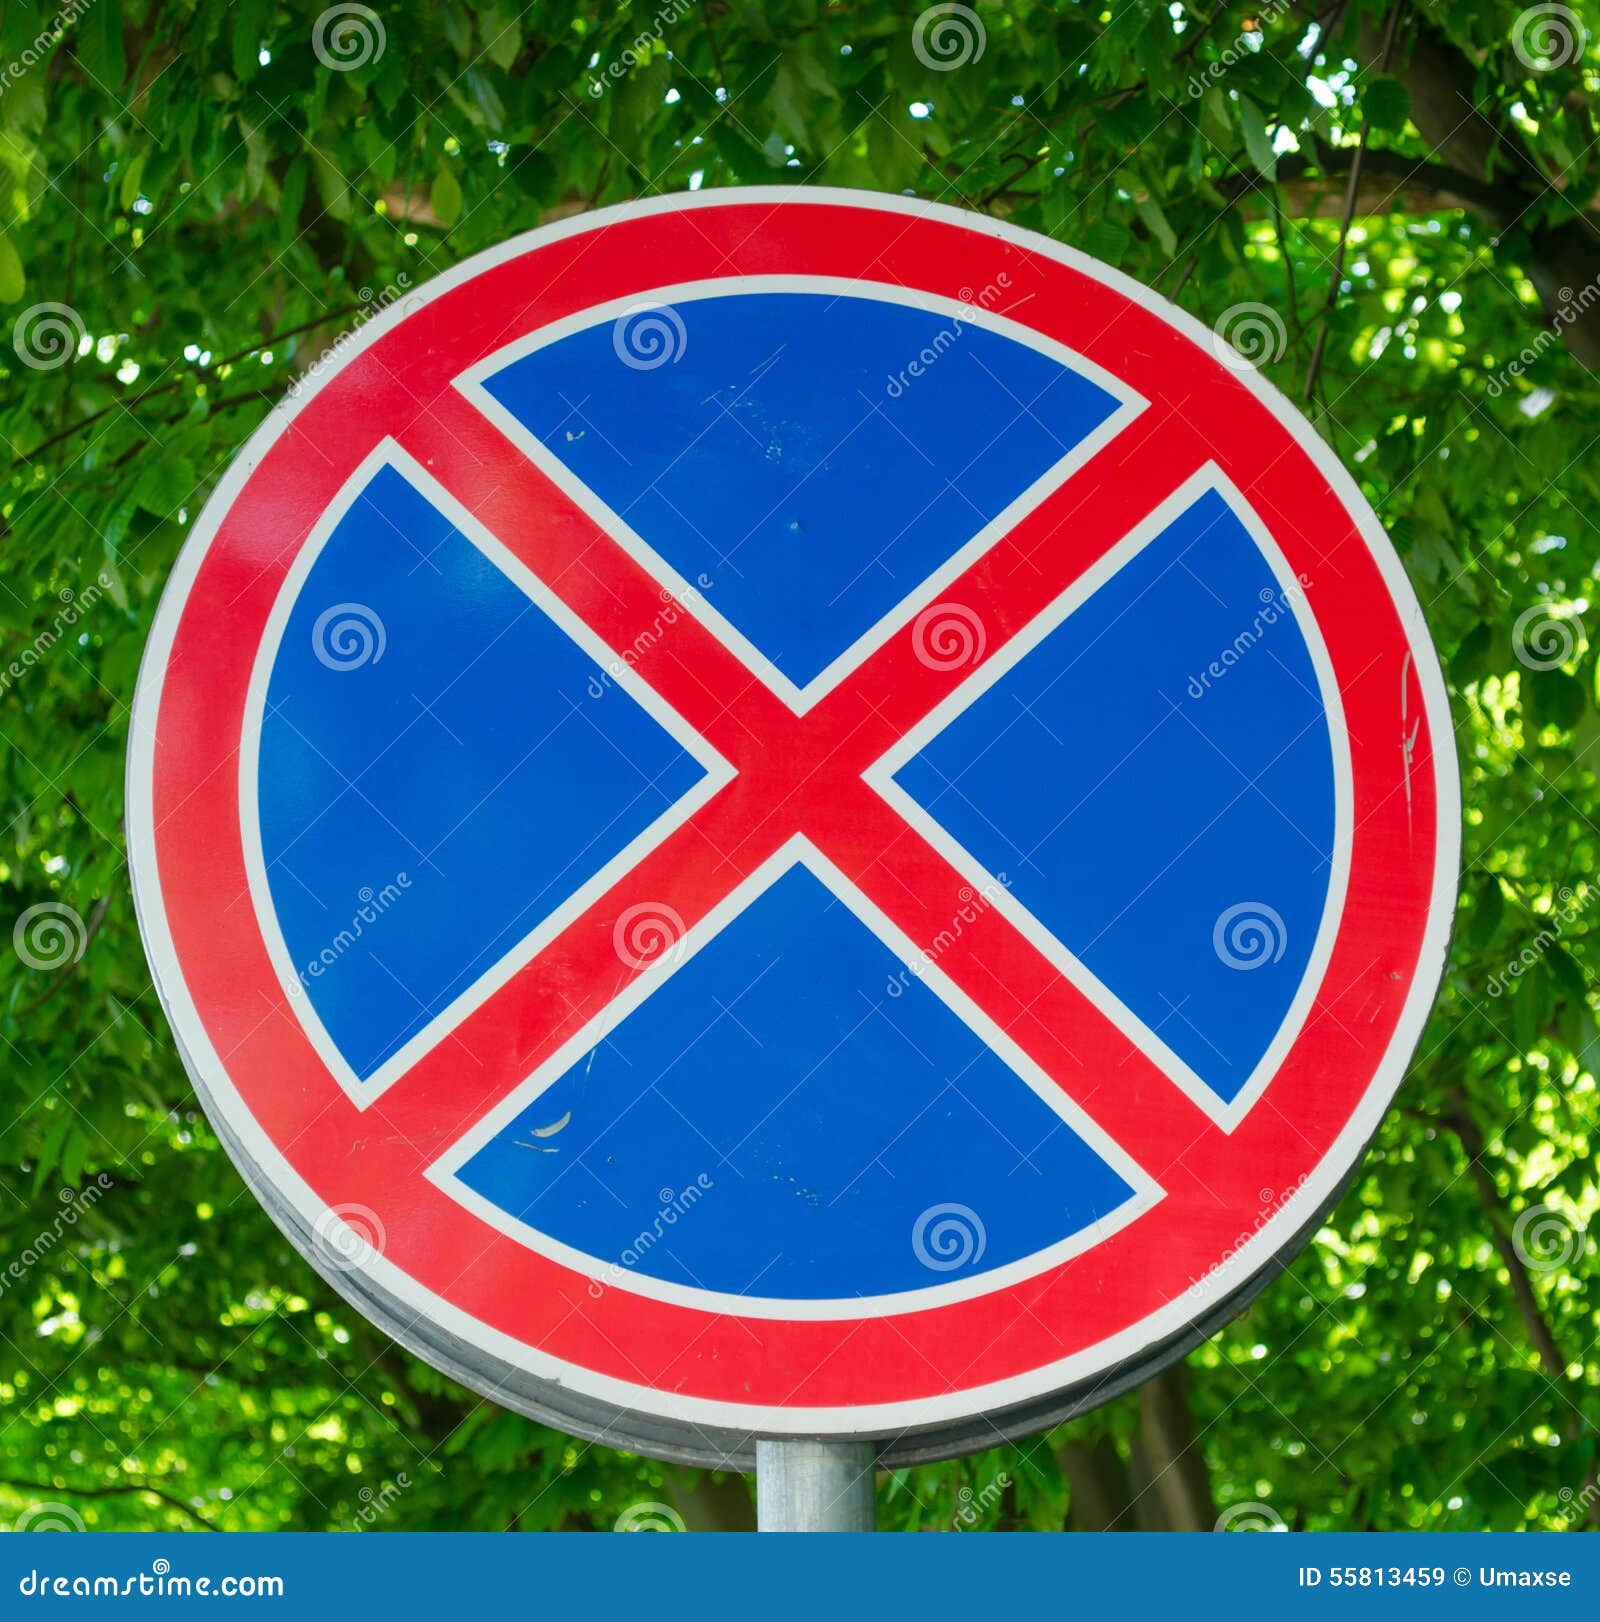 Что означает перечеркнутый синий круг. Дорожный знак круглый с красным крестом. Круглые круглые дорожные знаки. Круглые дорожные знаки с крестом. Круглый синий знак с красным крестом.